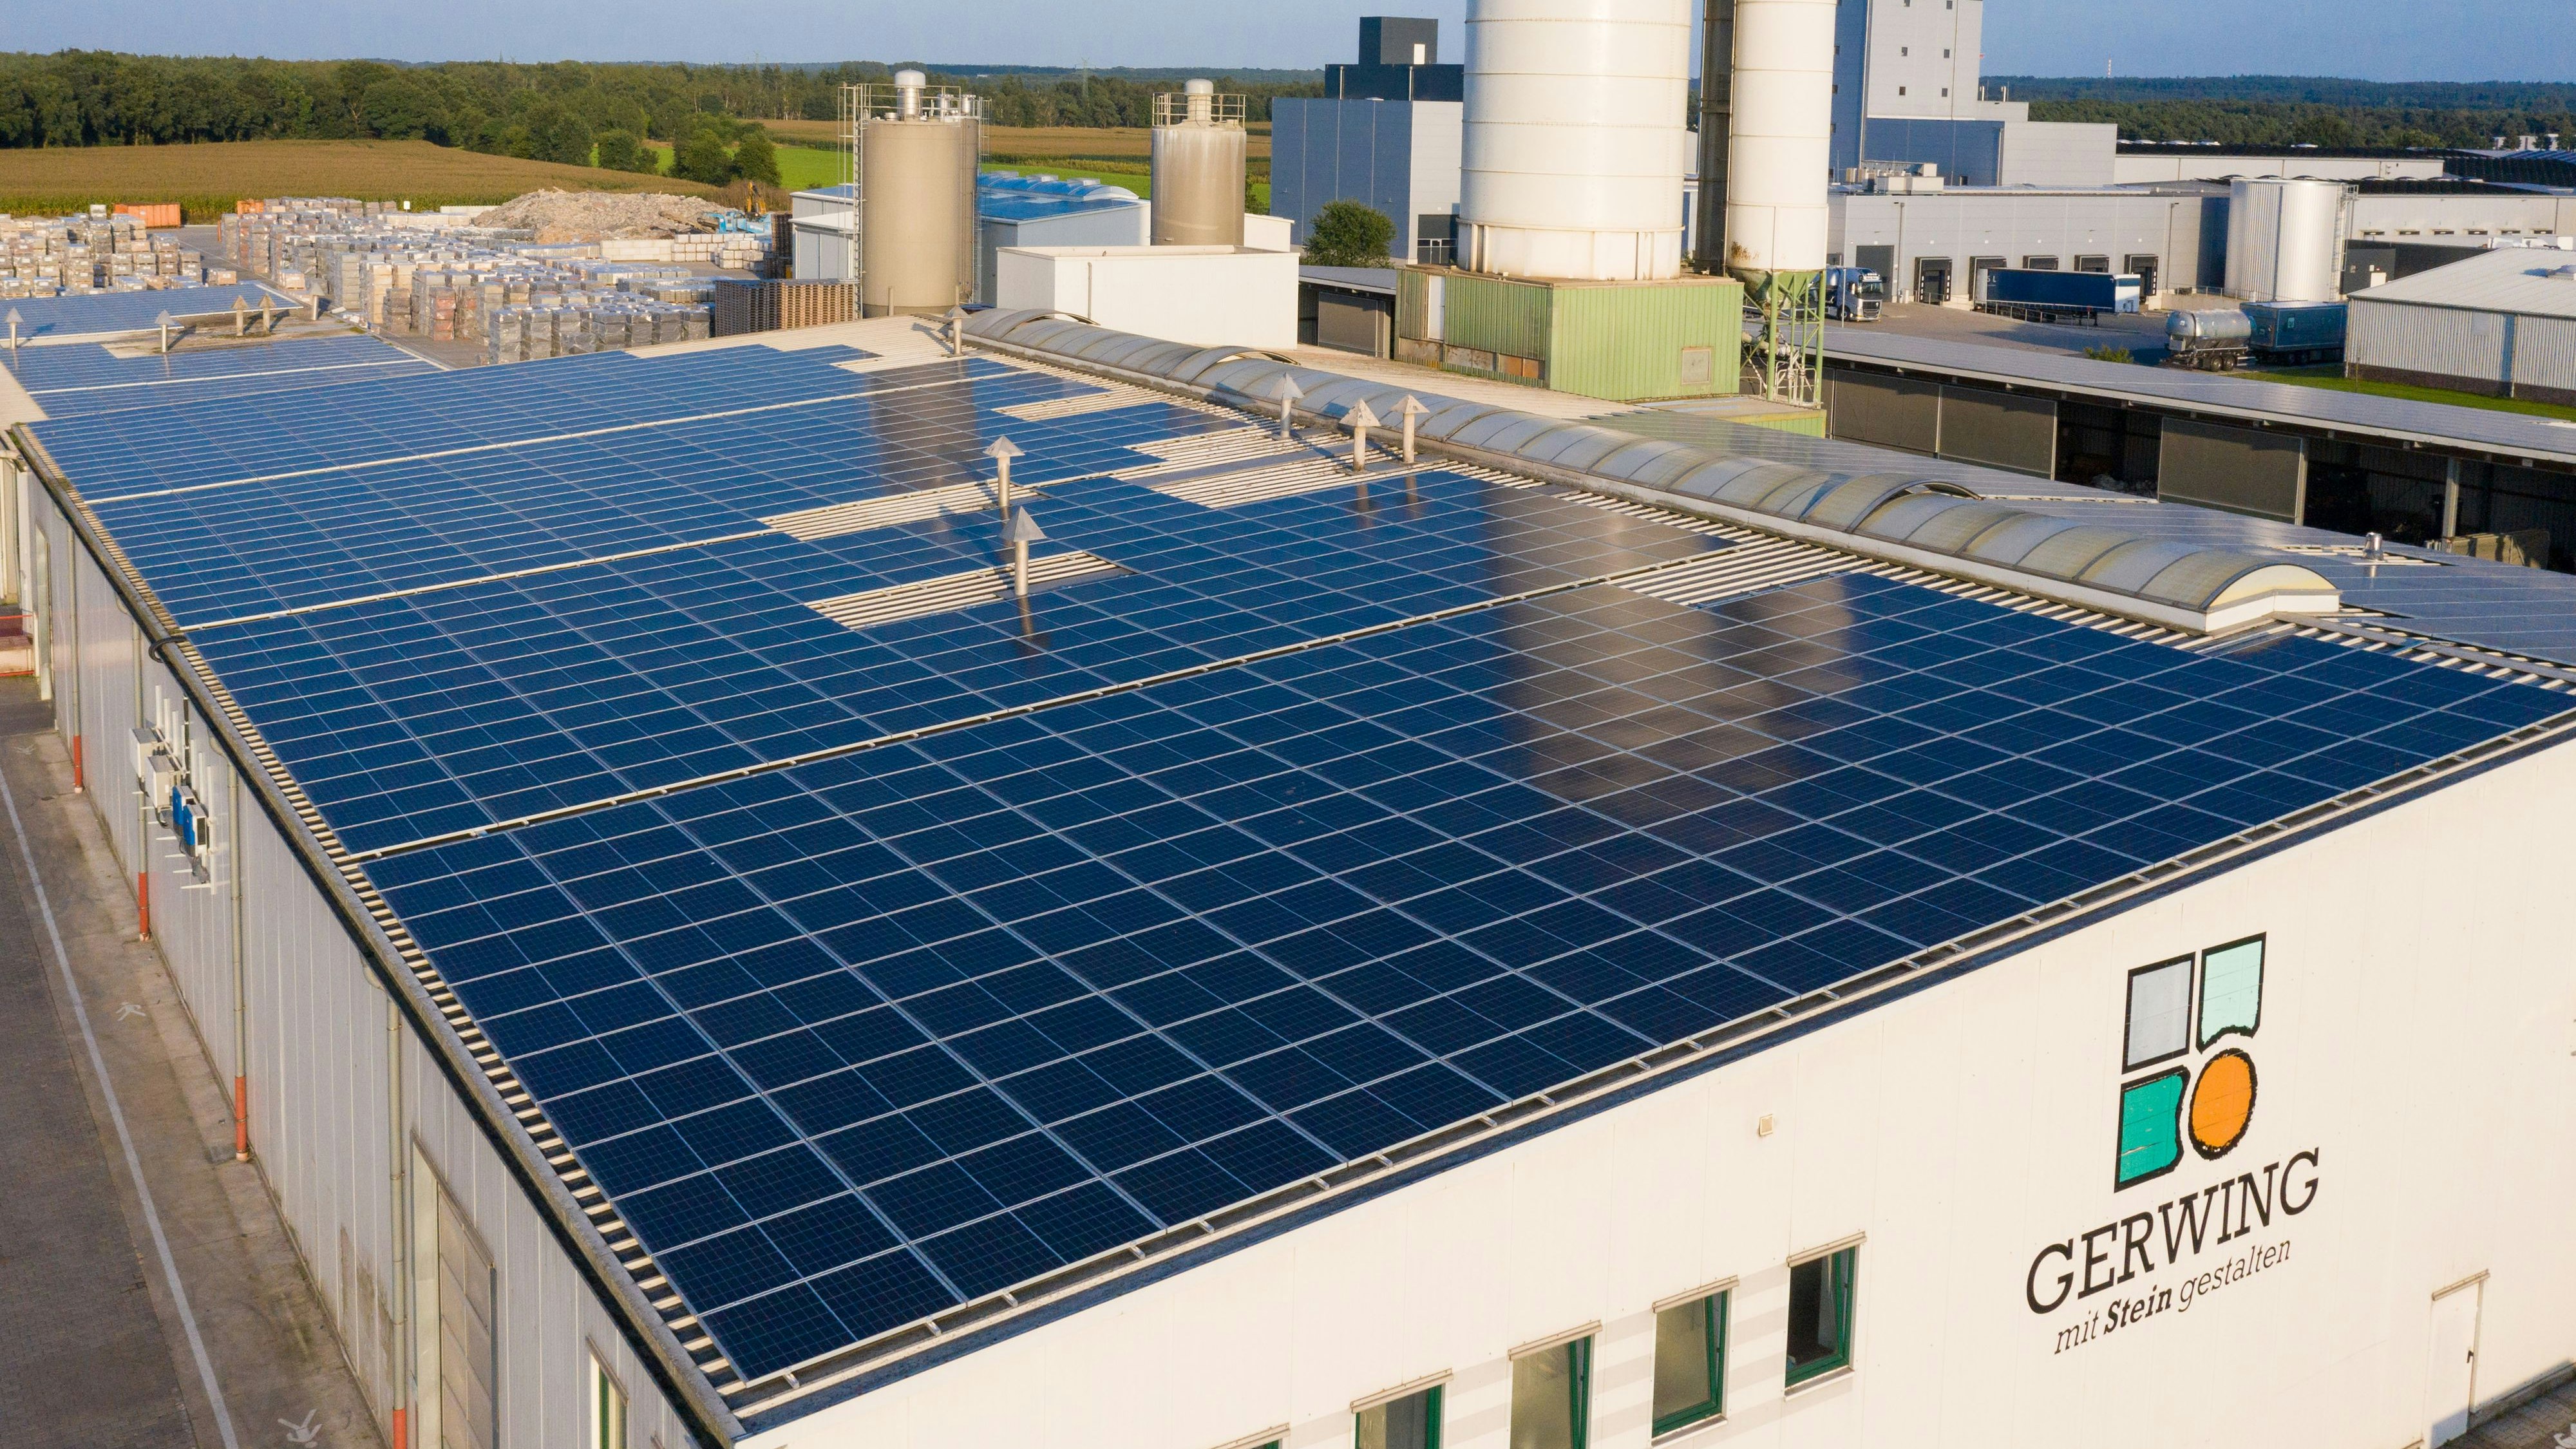 Neue Solaranlage der Firma Gerwing in Holdorf: Die Sonne scheint, der erzeugte Strom darf aber nicht genutzt werden. Foto: M. Niehues